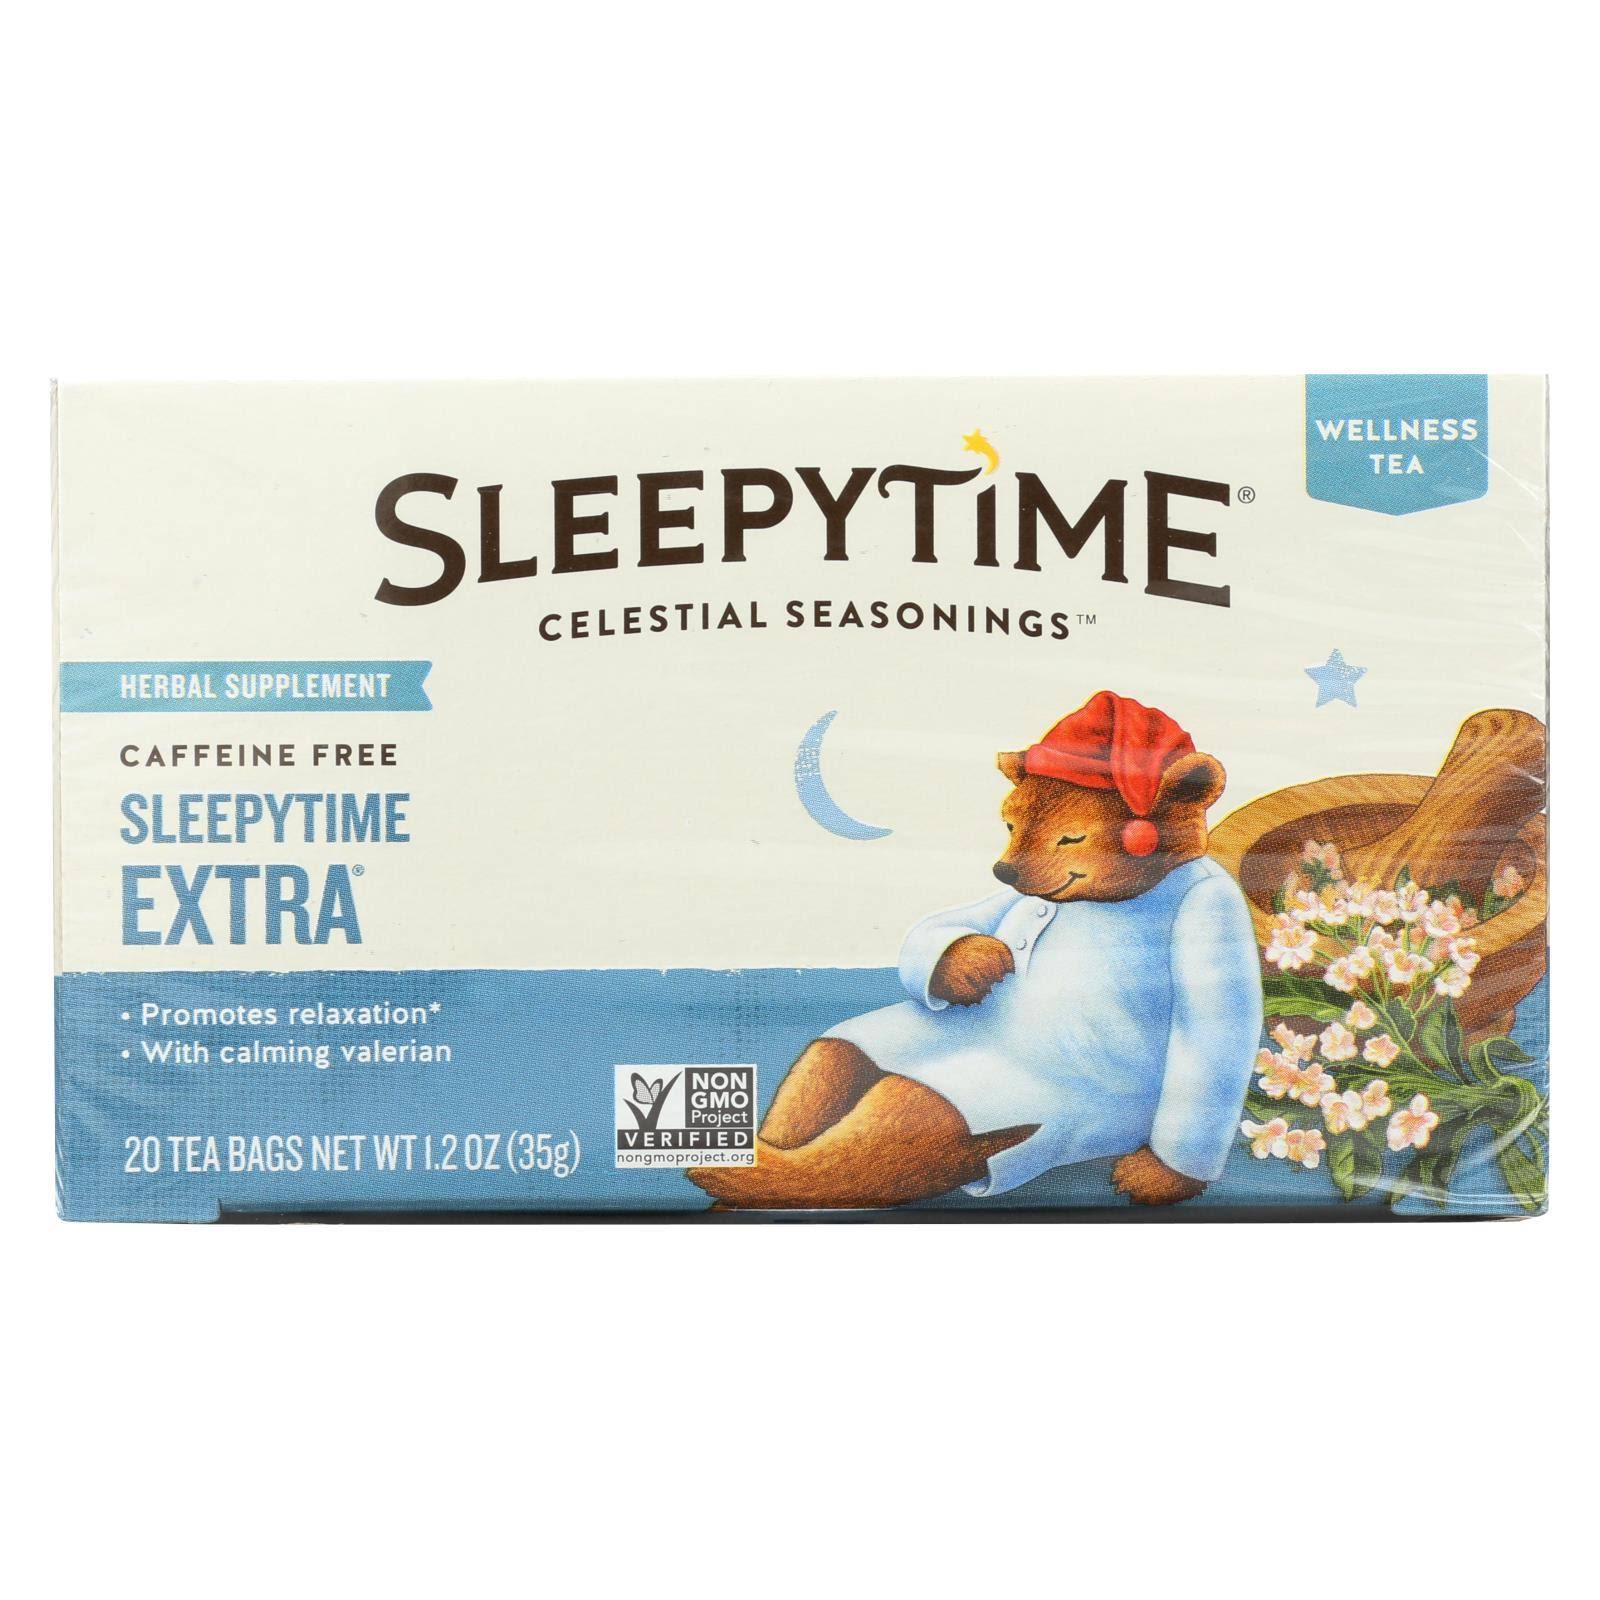 Celestial Seasonings Sleepytime Extra Wellness Tea - 20ct